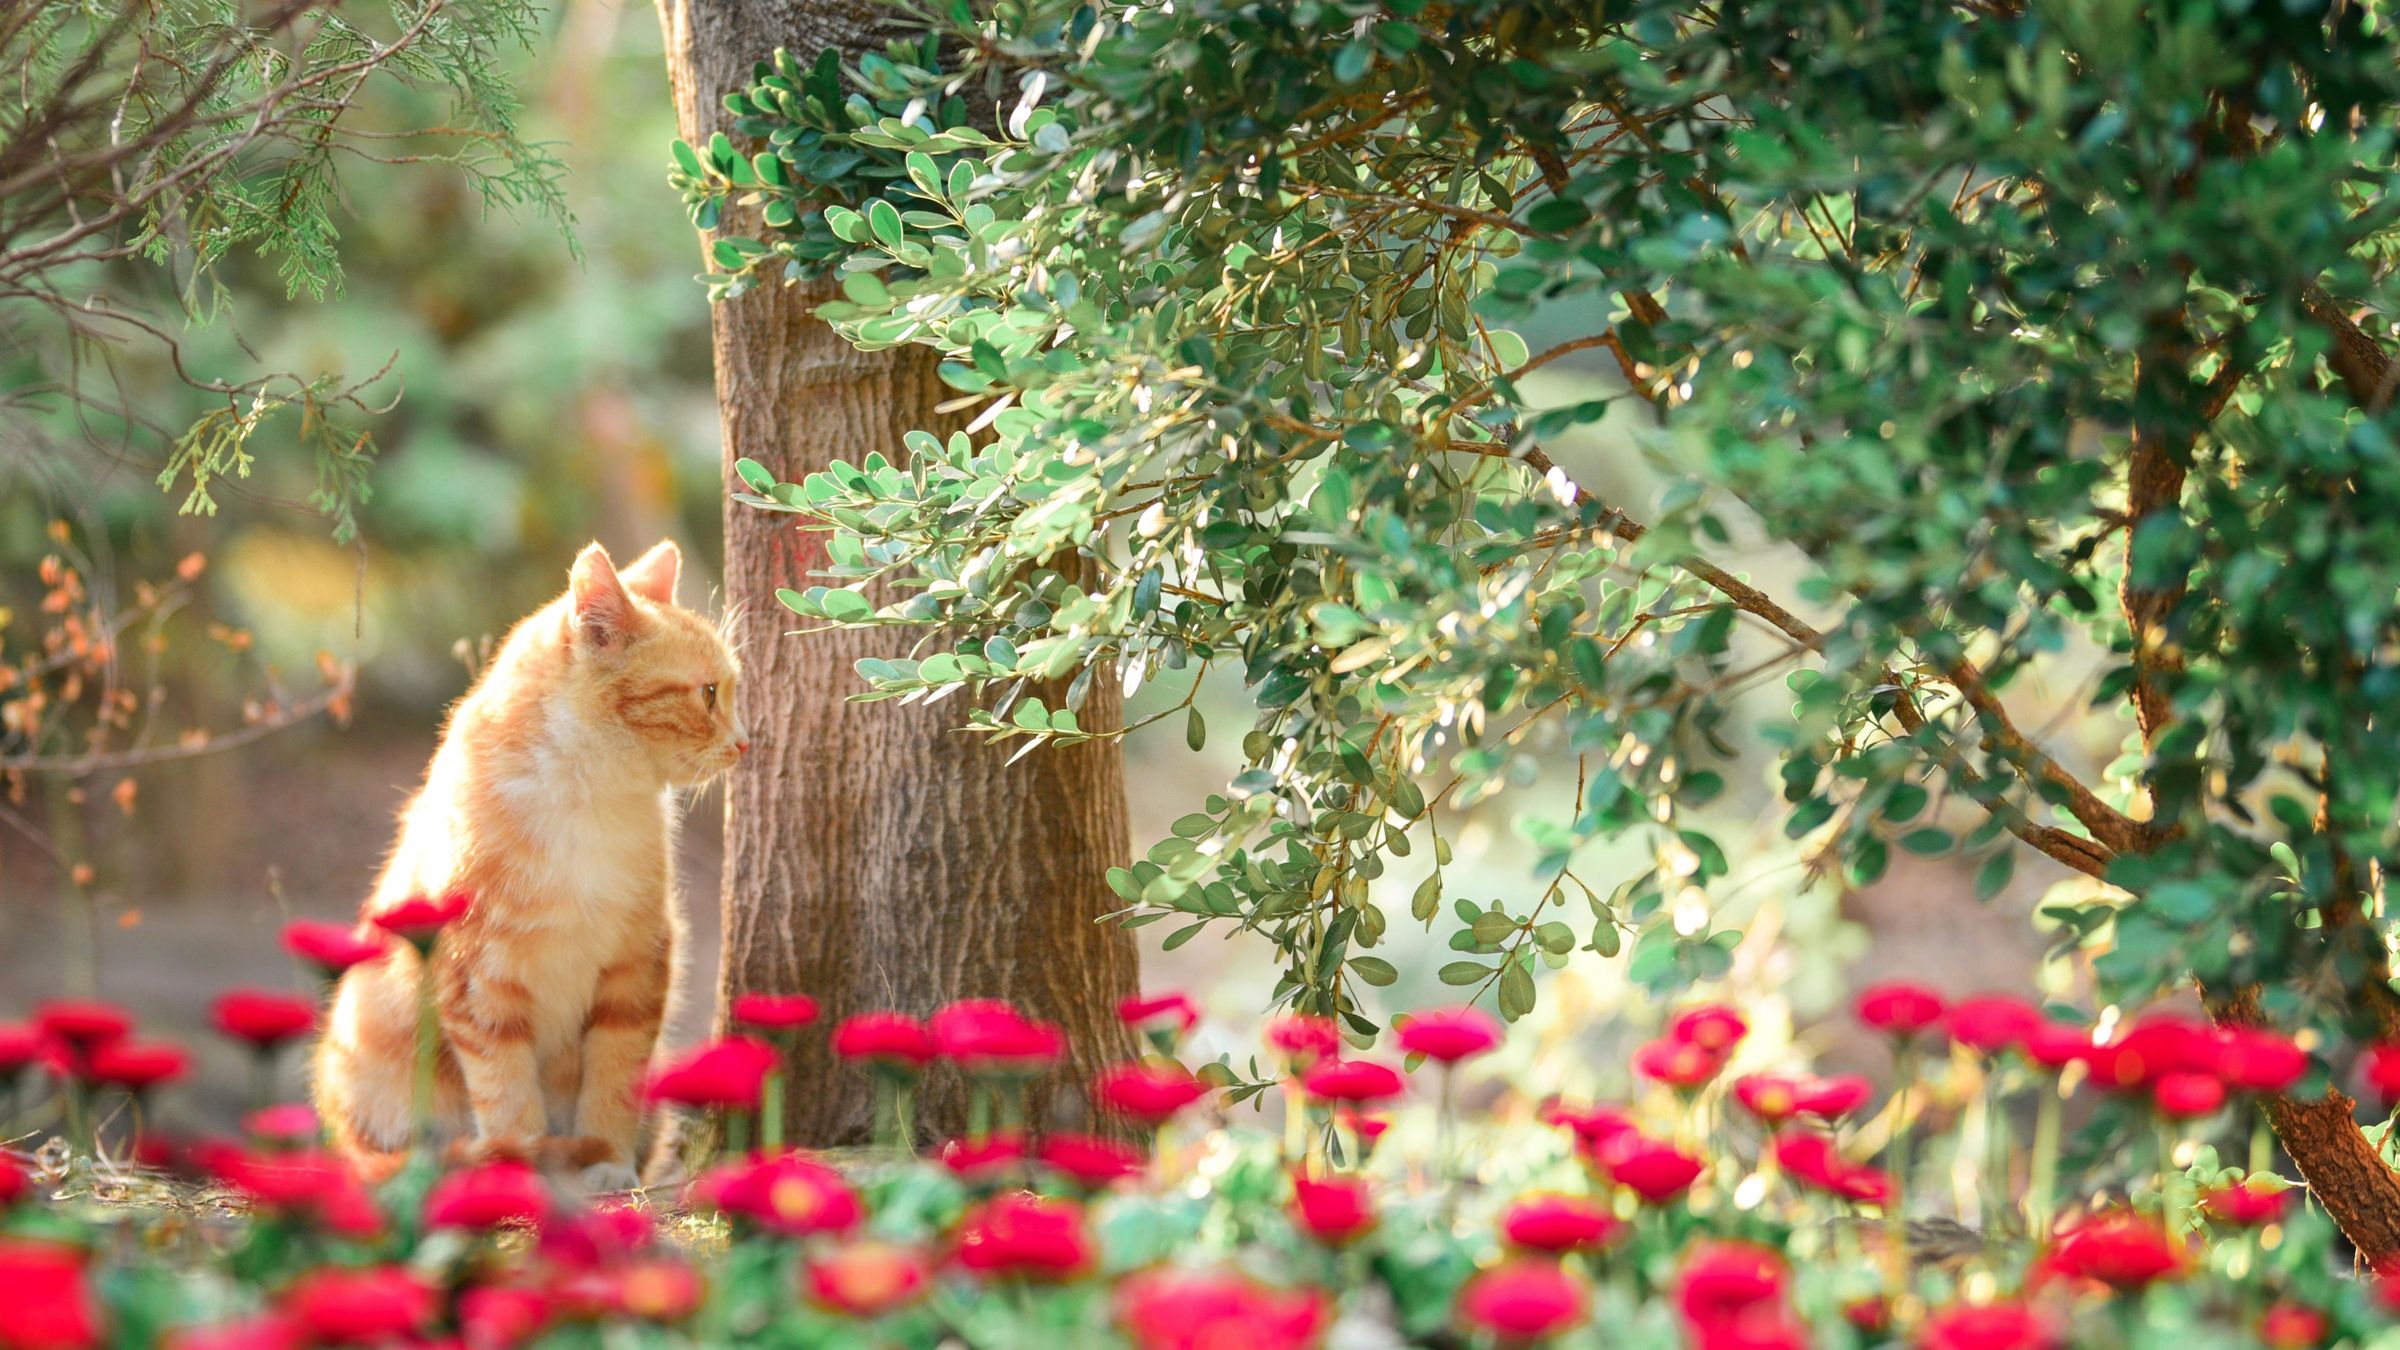 聪明可爱性格还很好的橘猫在树林里高清大图